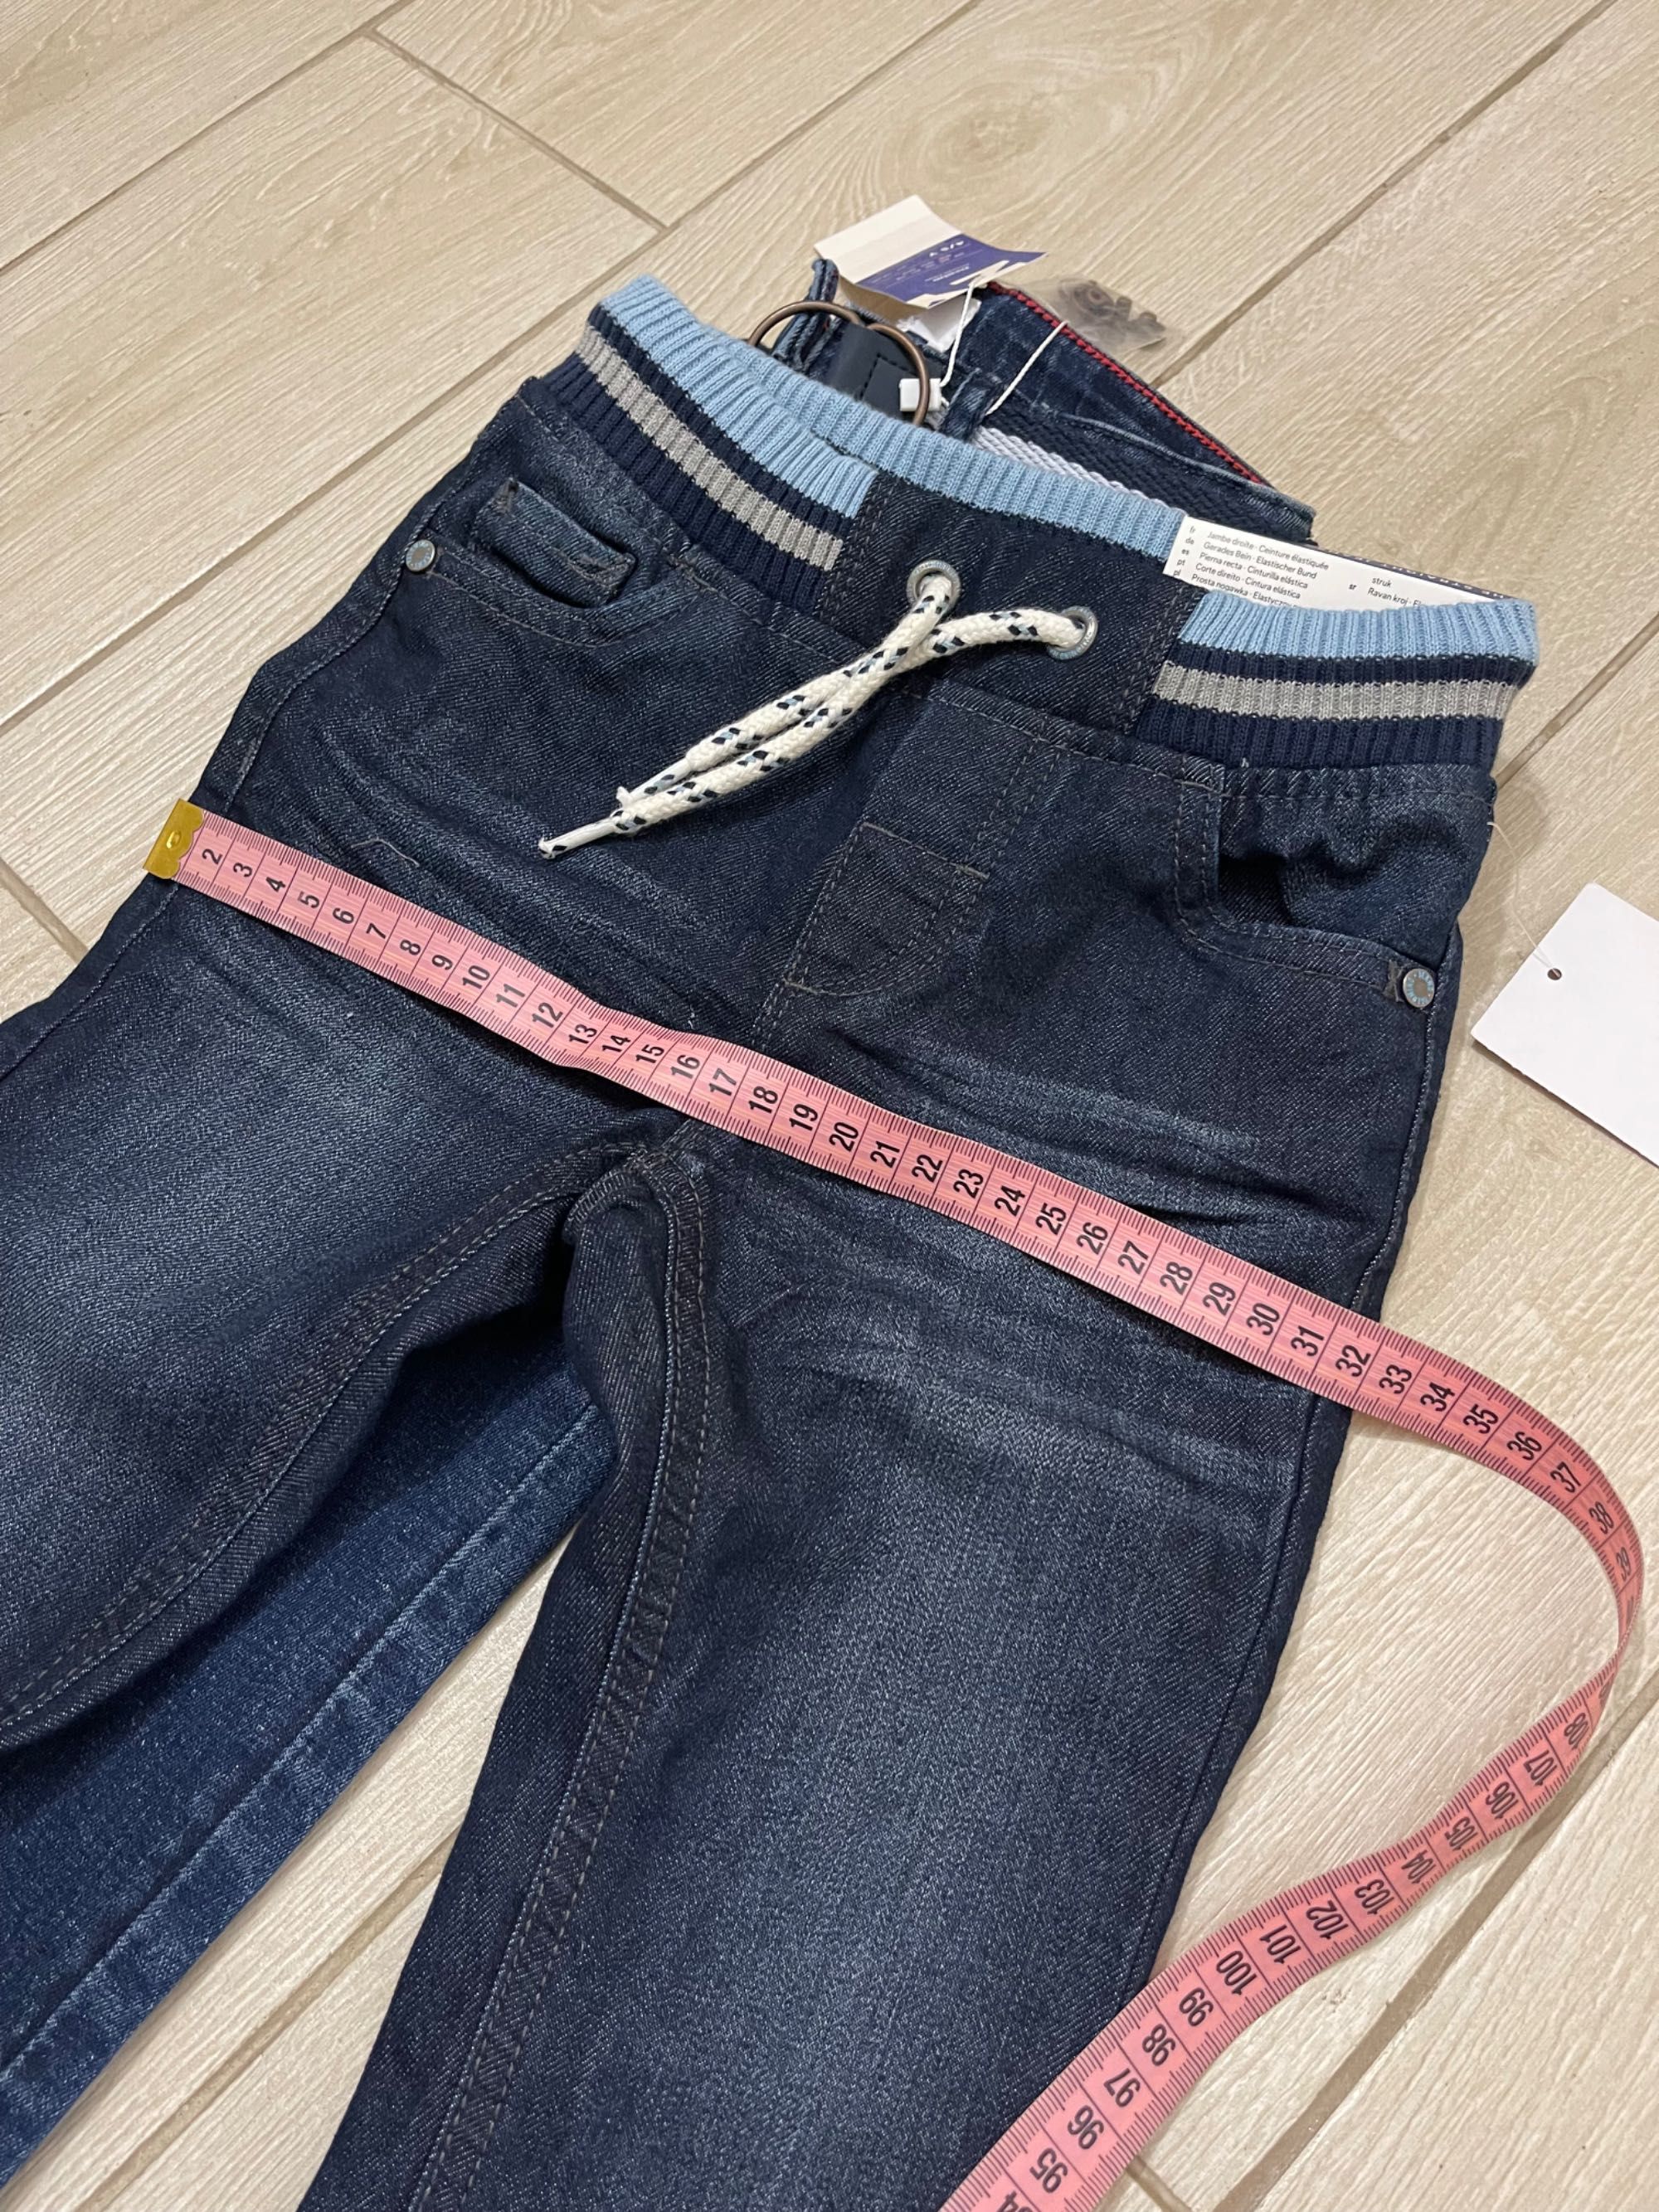 Нові джинси на хлопчика ZY 98-110 см